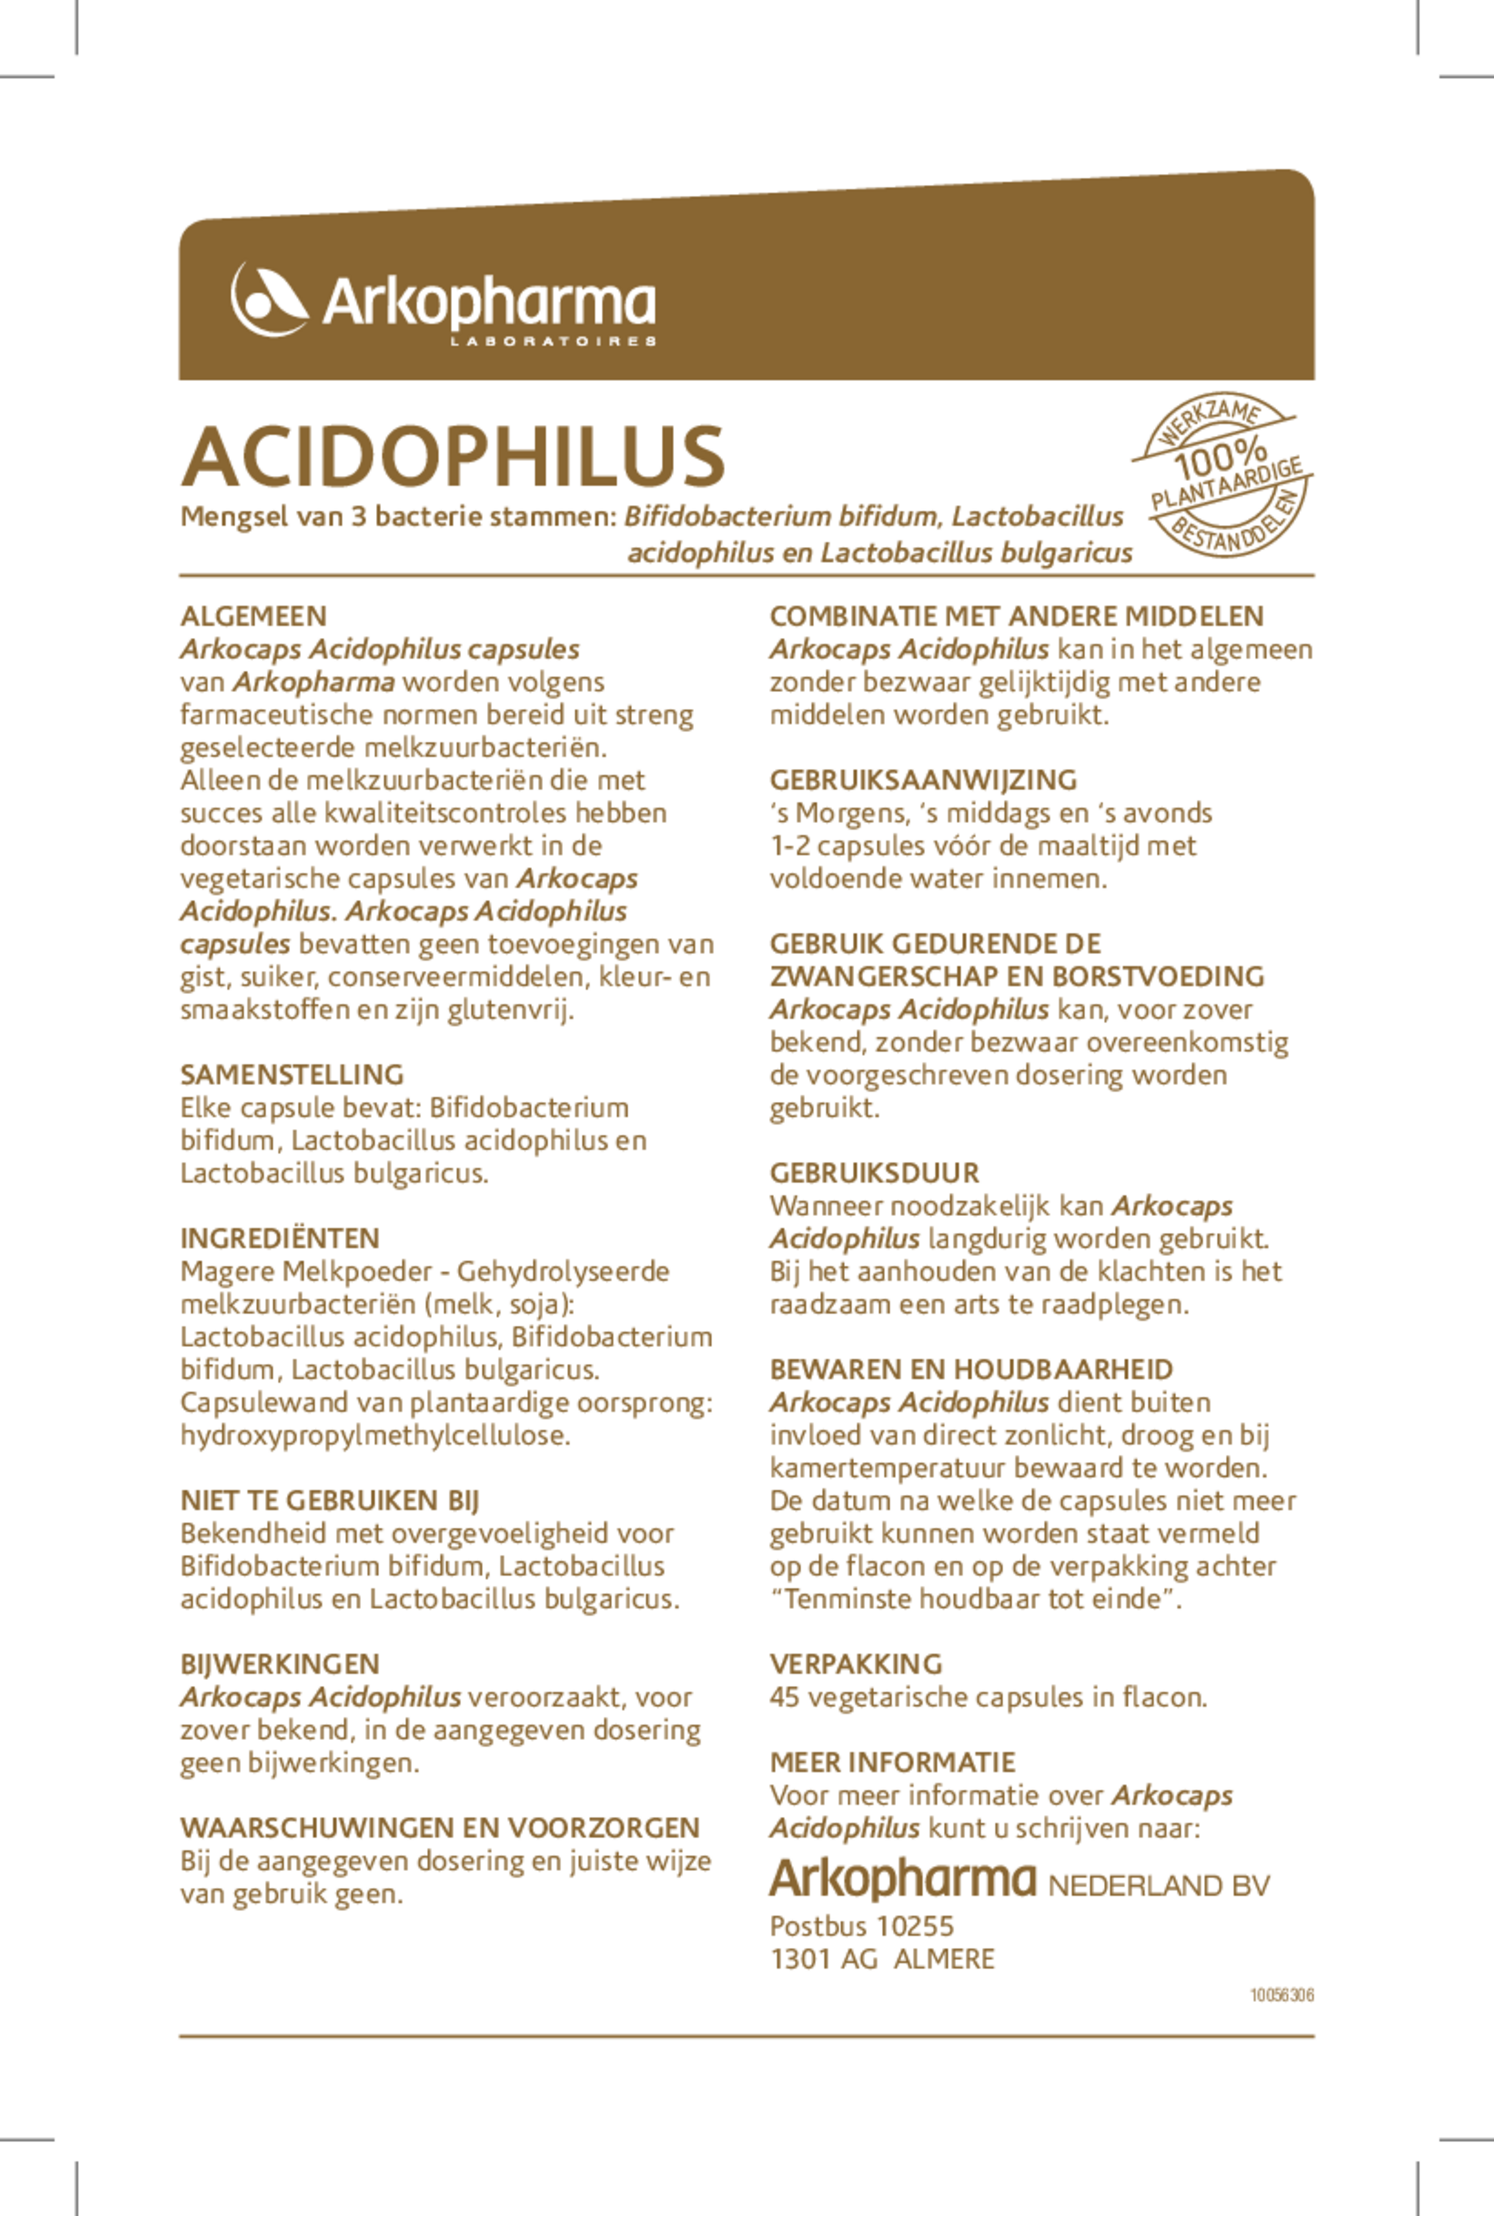 Acidophilus Complex Capsules afbeelding van document #1, gebruiksaanwijzing